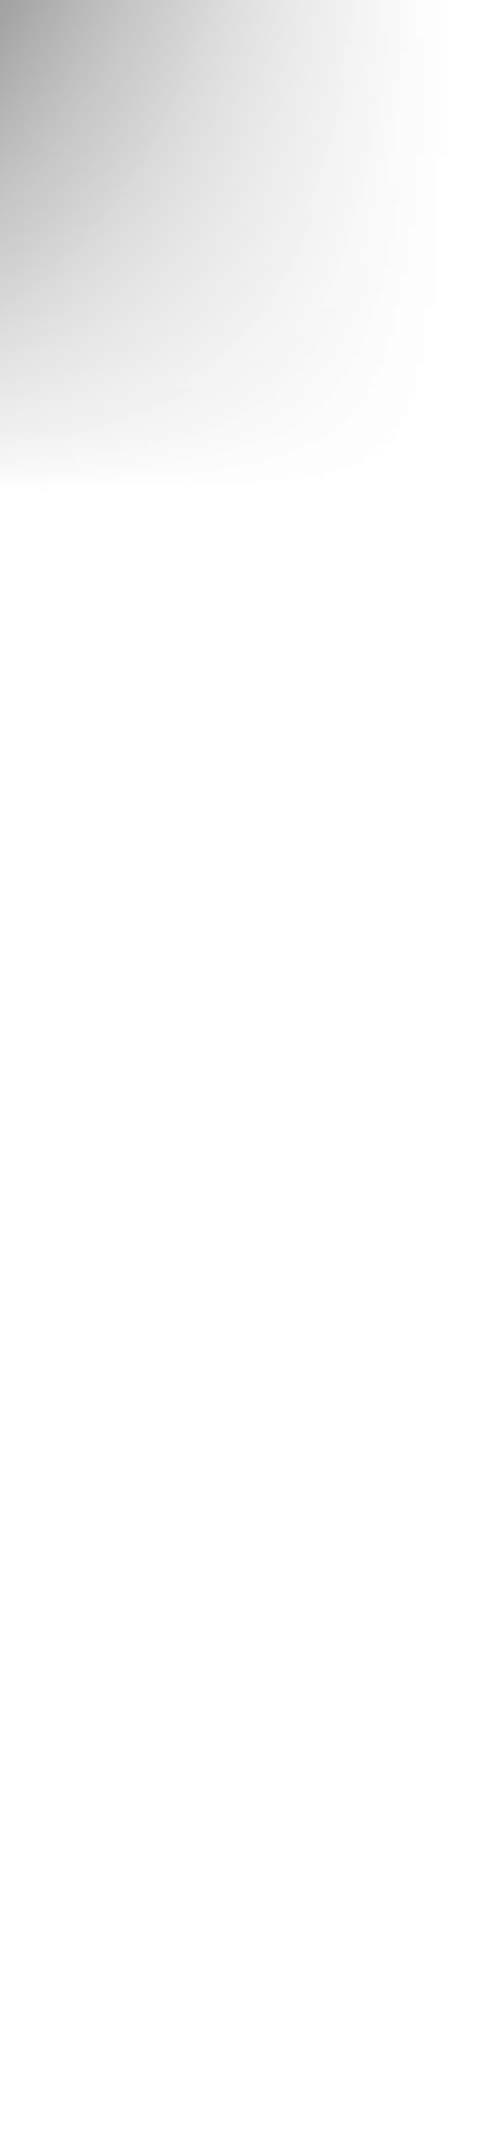 Ал режиссер Есмұхан Обаевтың сахналауымен қойылатын «Абай» традегиясы ұлы ойшылдың мірі, болмысы, бұрынғы және қазіргі қазақ қоғамындағы Абай айтқан мәселелердің ұлы ақынның жаңашылдық, ағартушылық